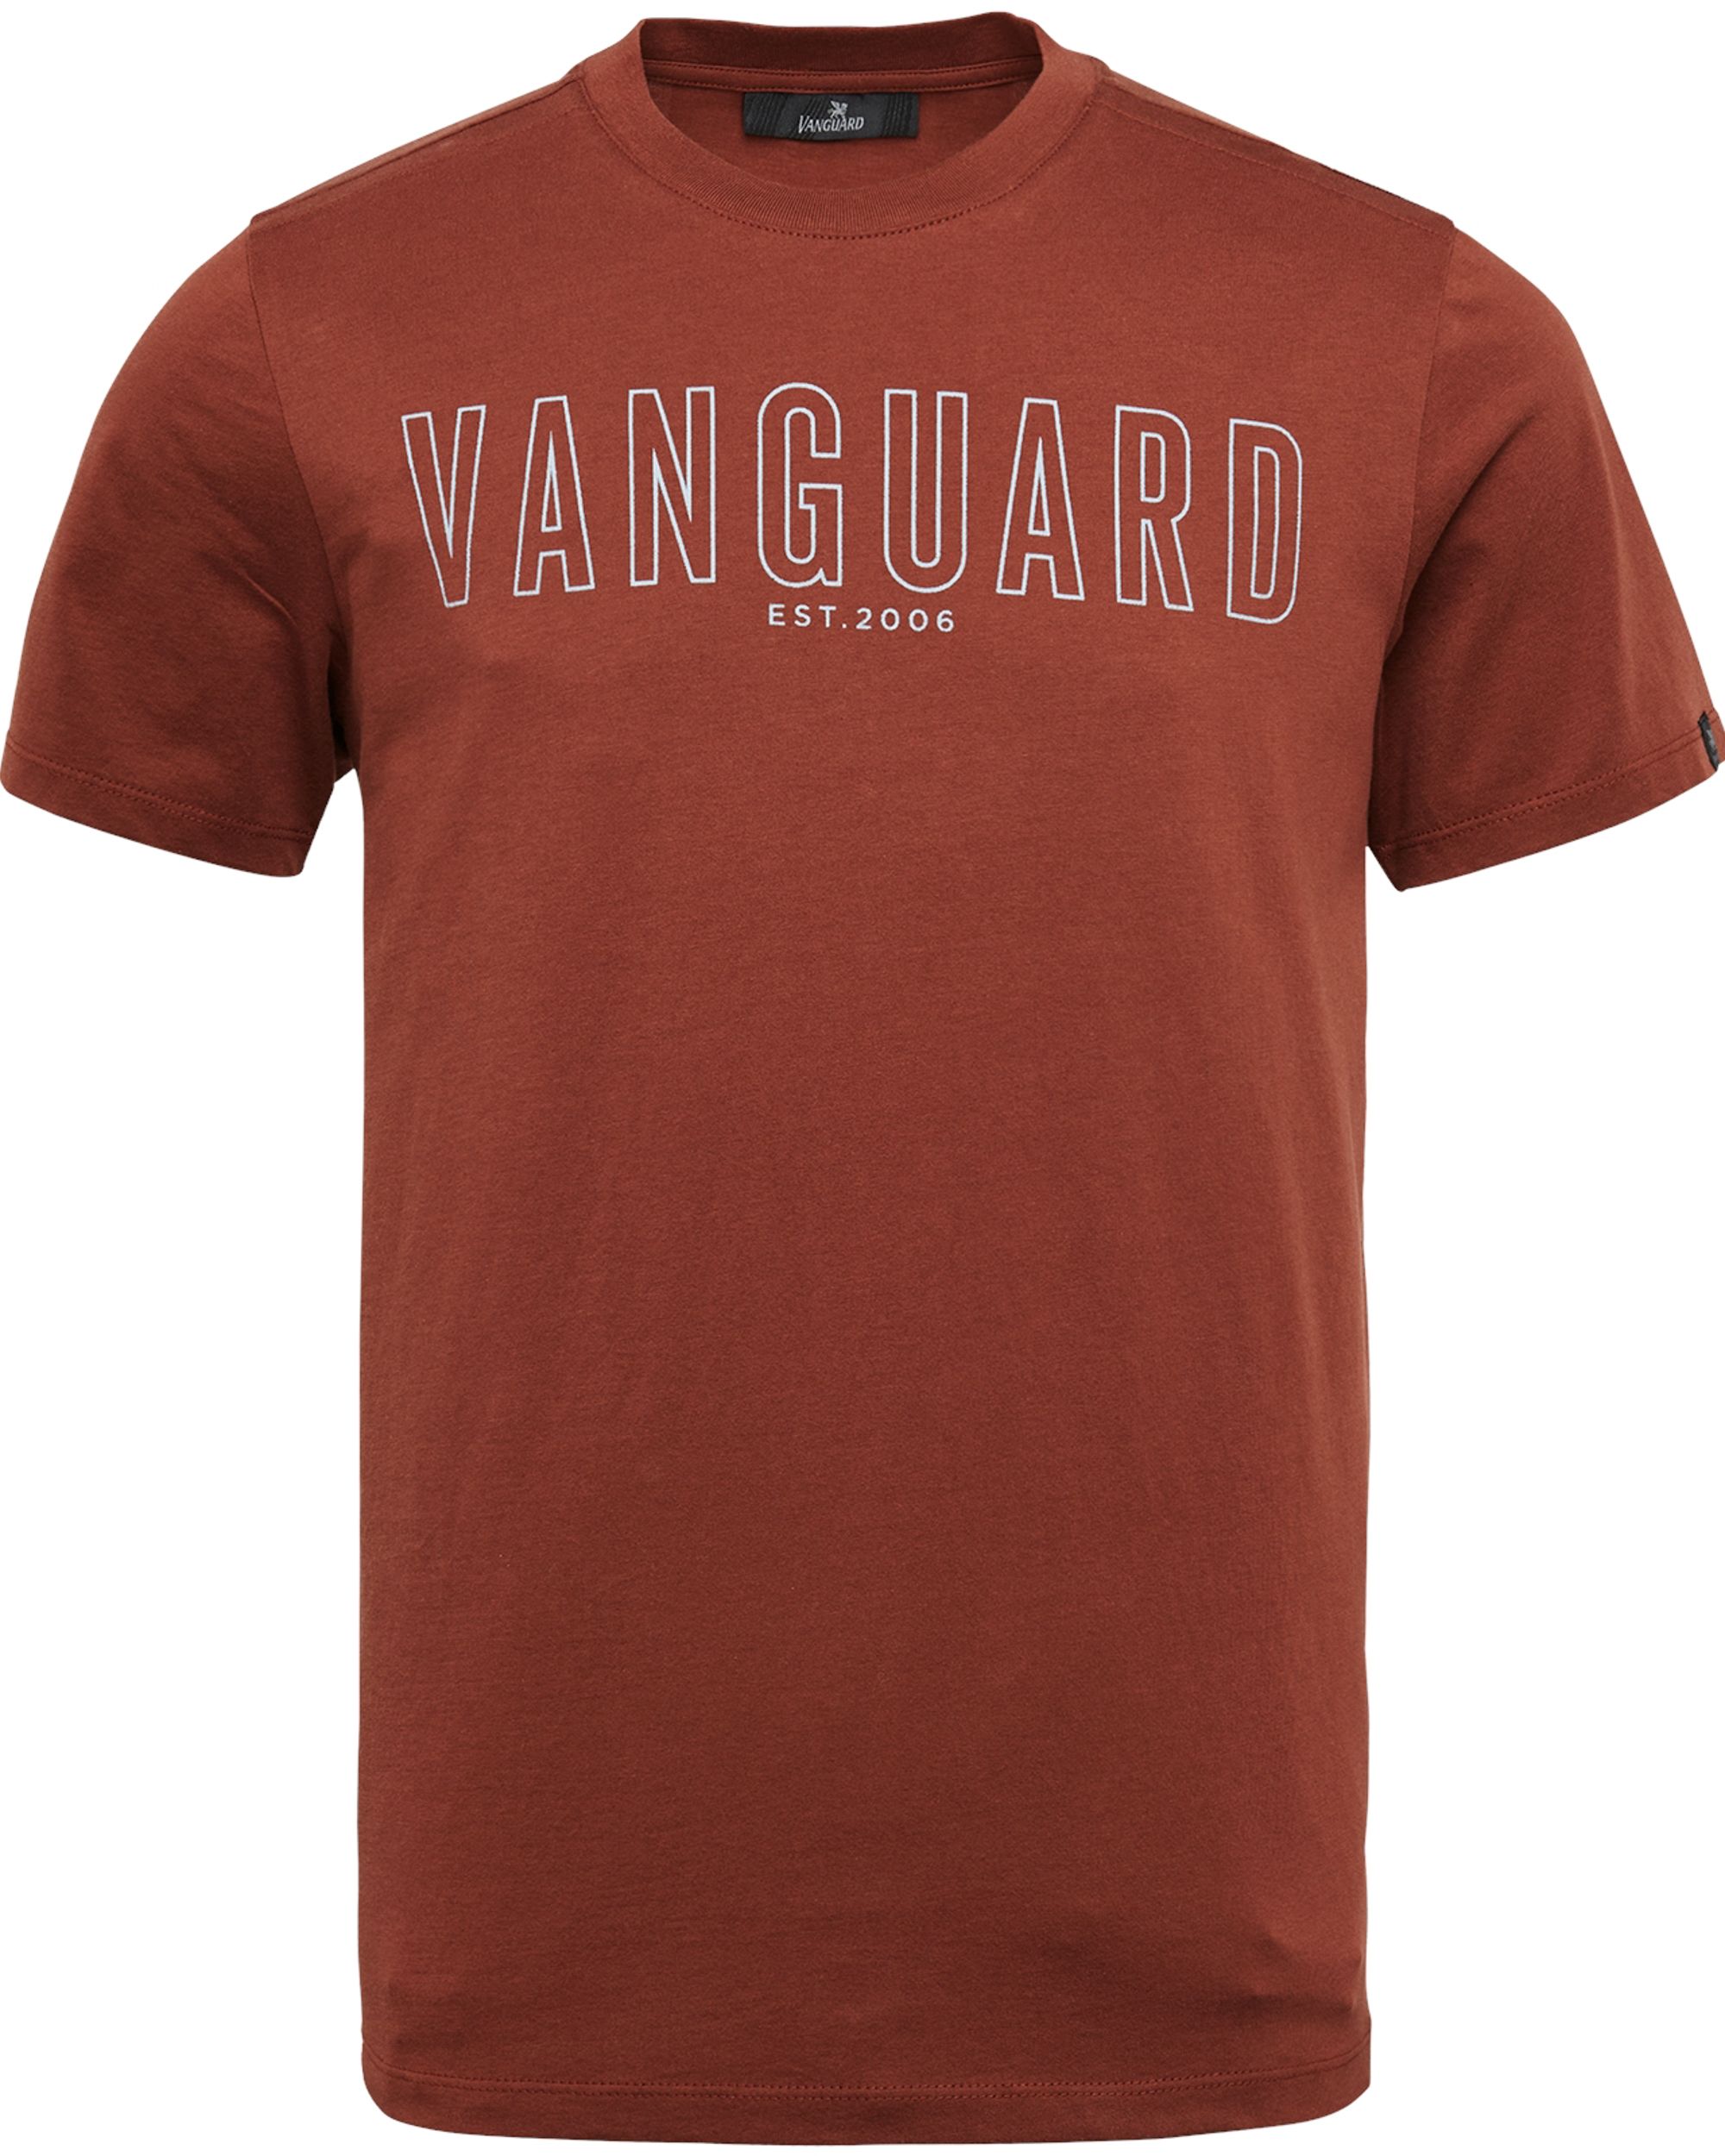 Vanguard T-shirt KM Bruin 083178-001-L